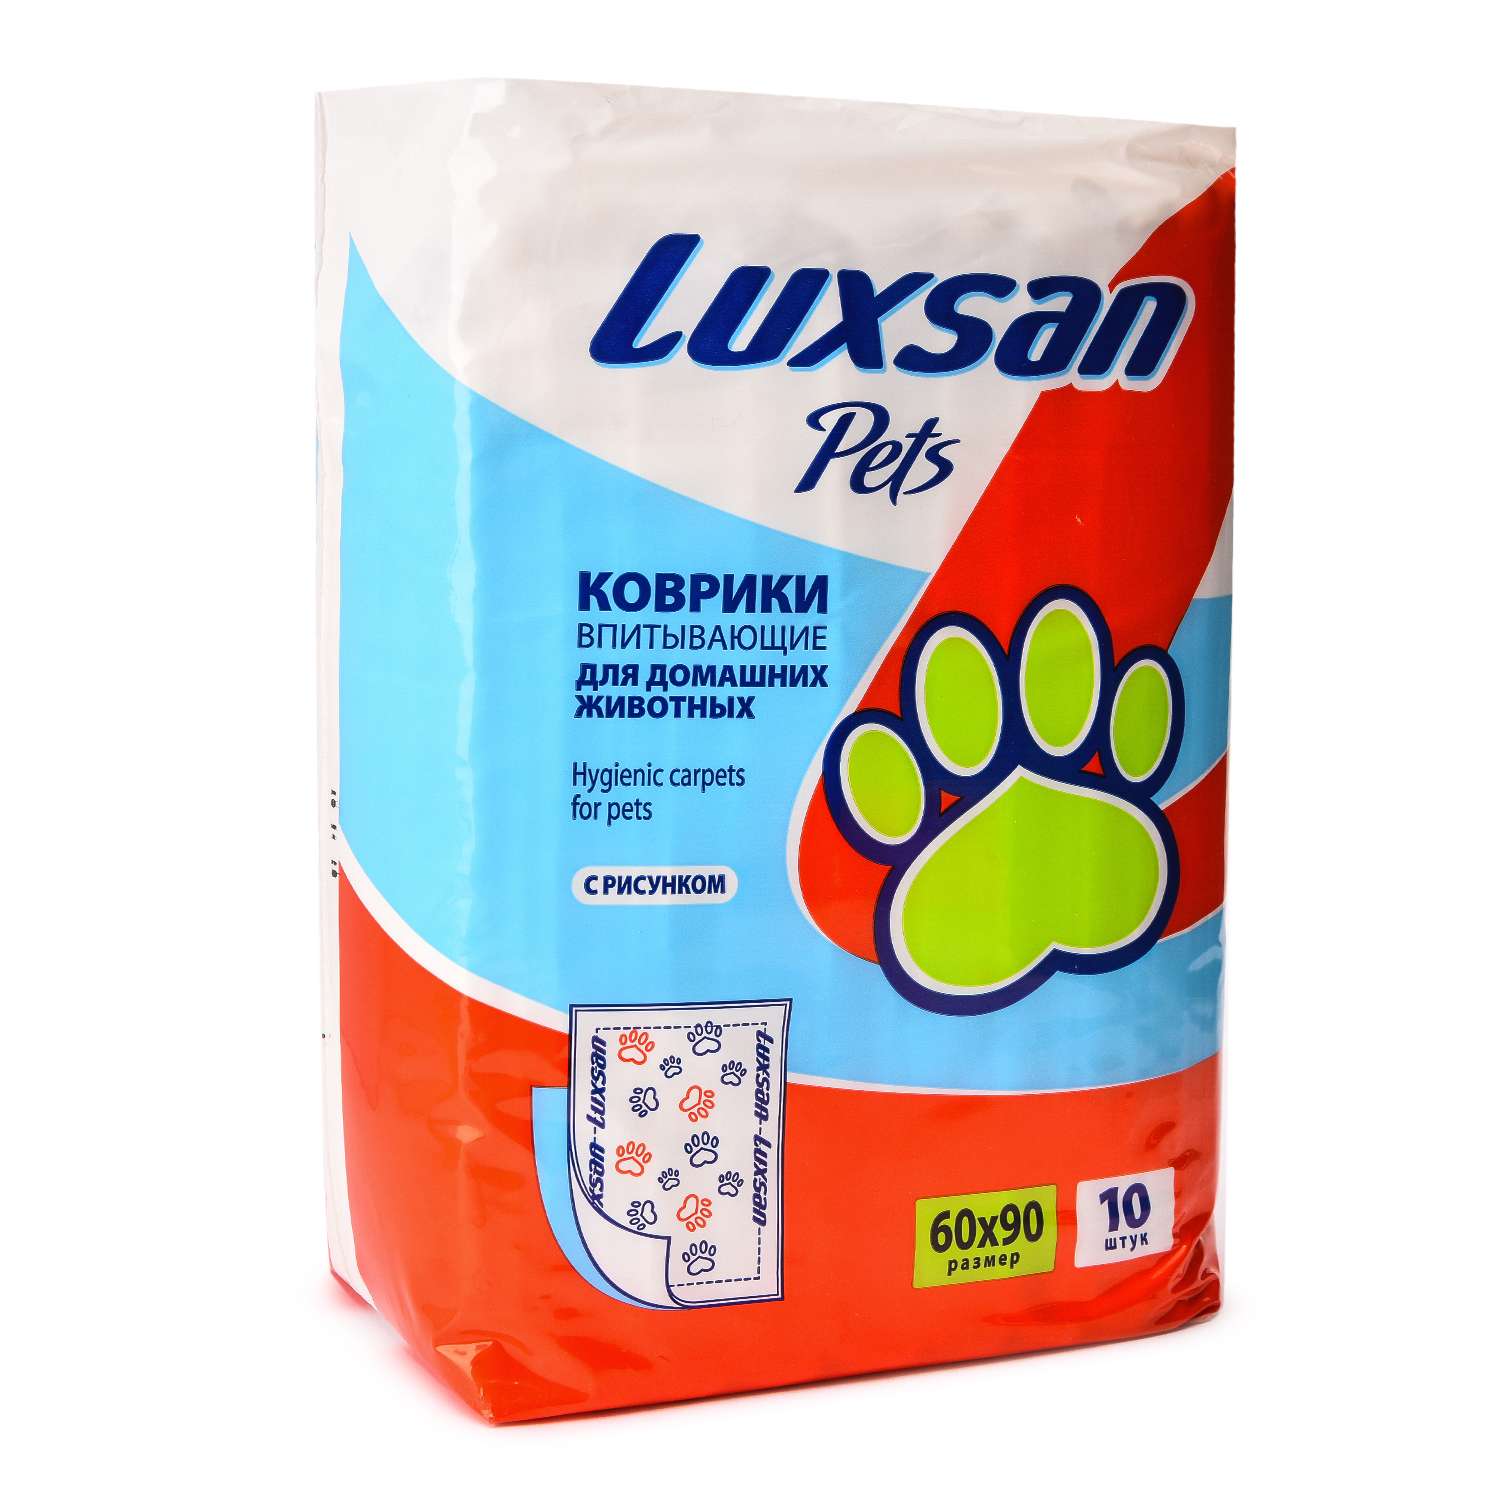 Коврики для животных Luxsan Pets впитывающие 60*90см 10шт - фото 1